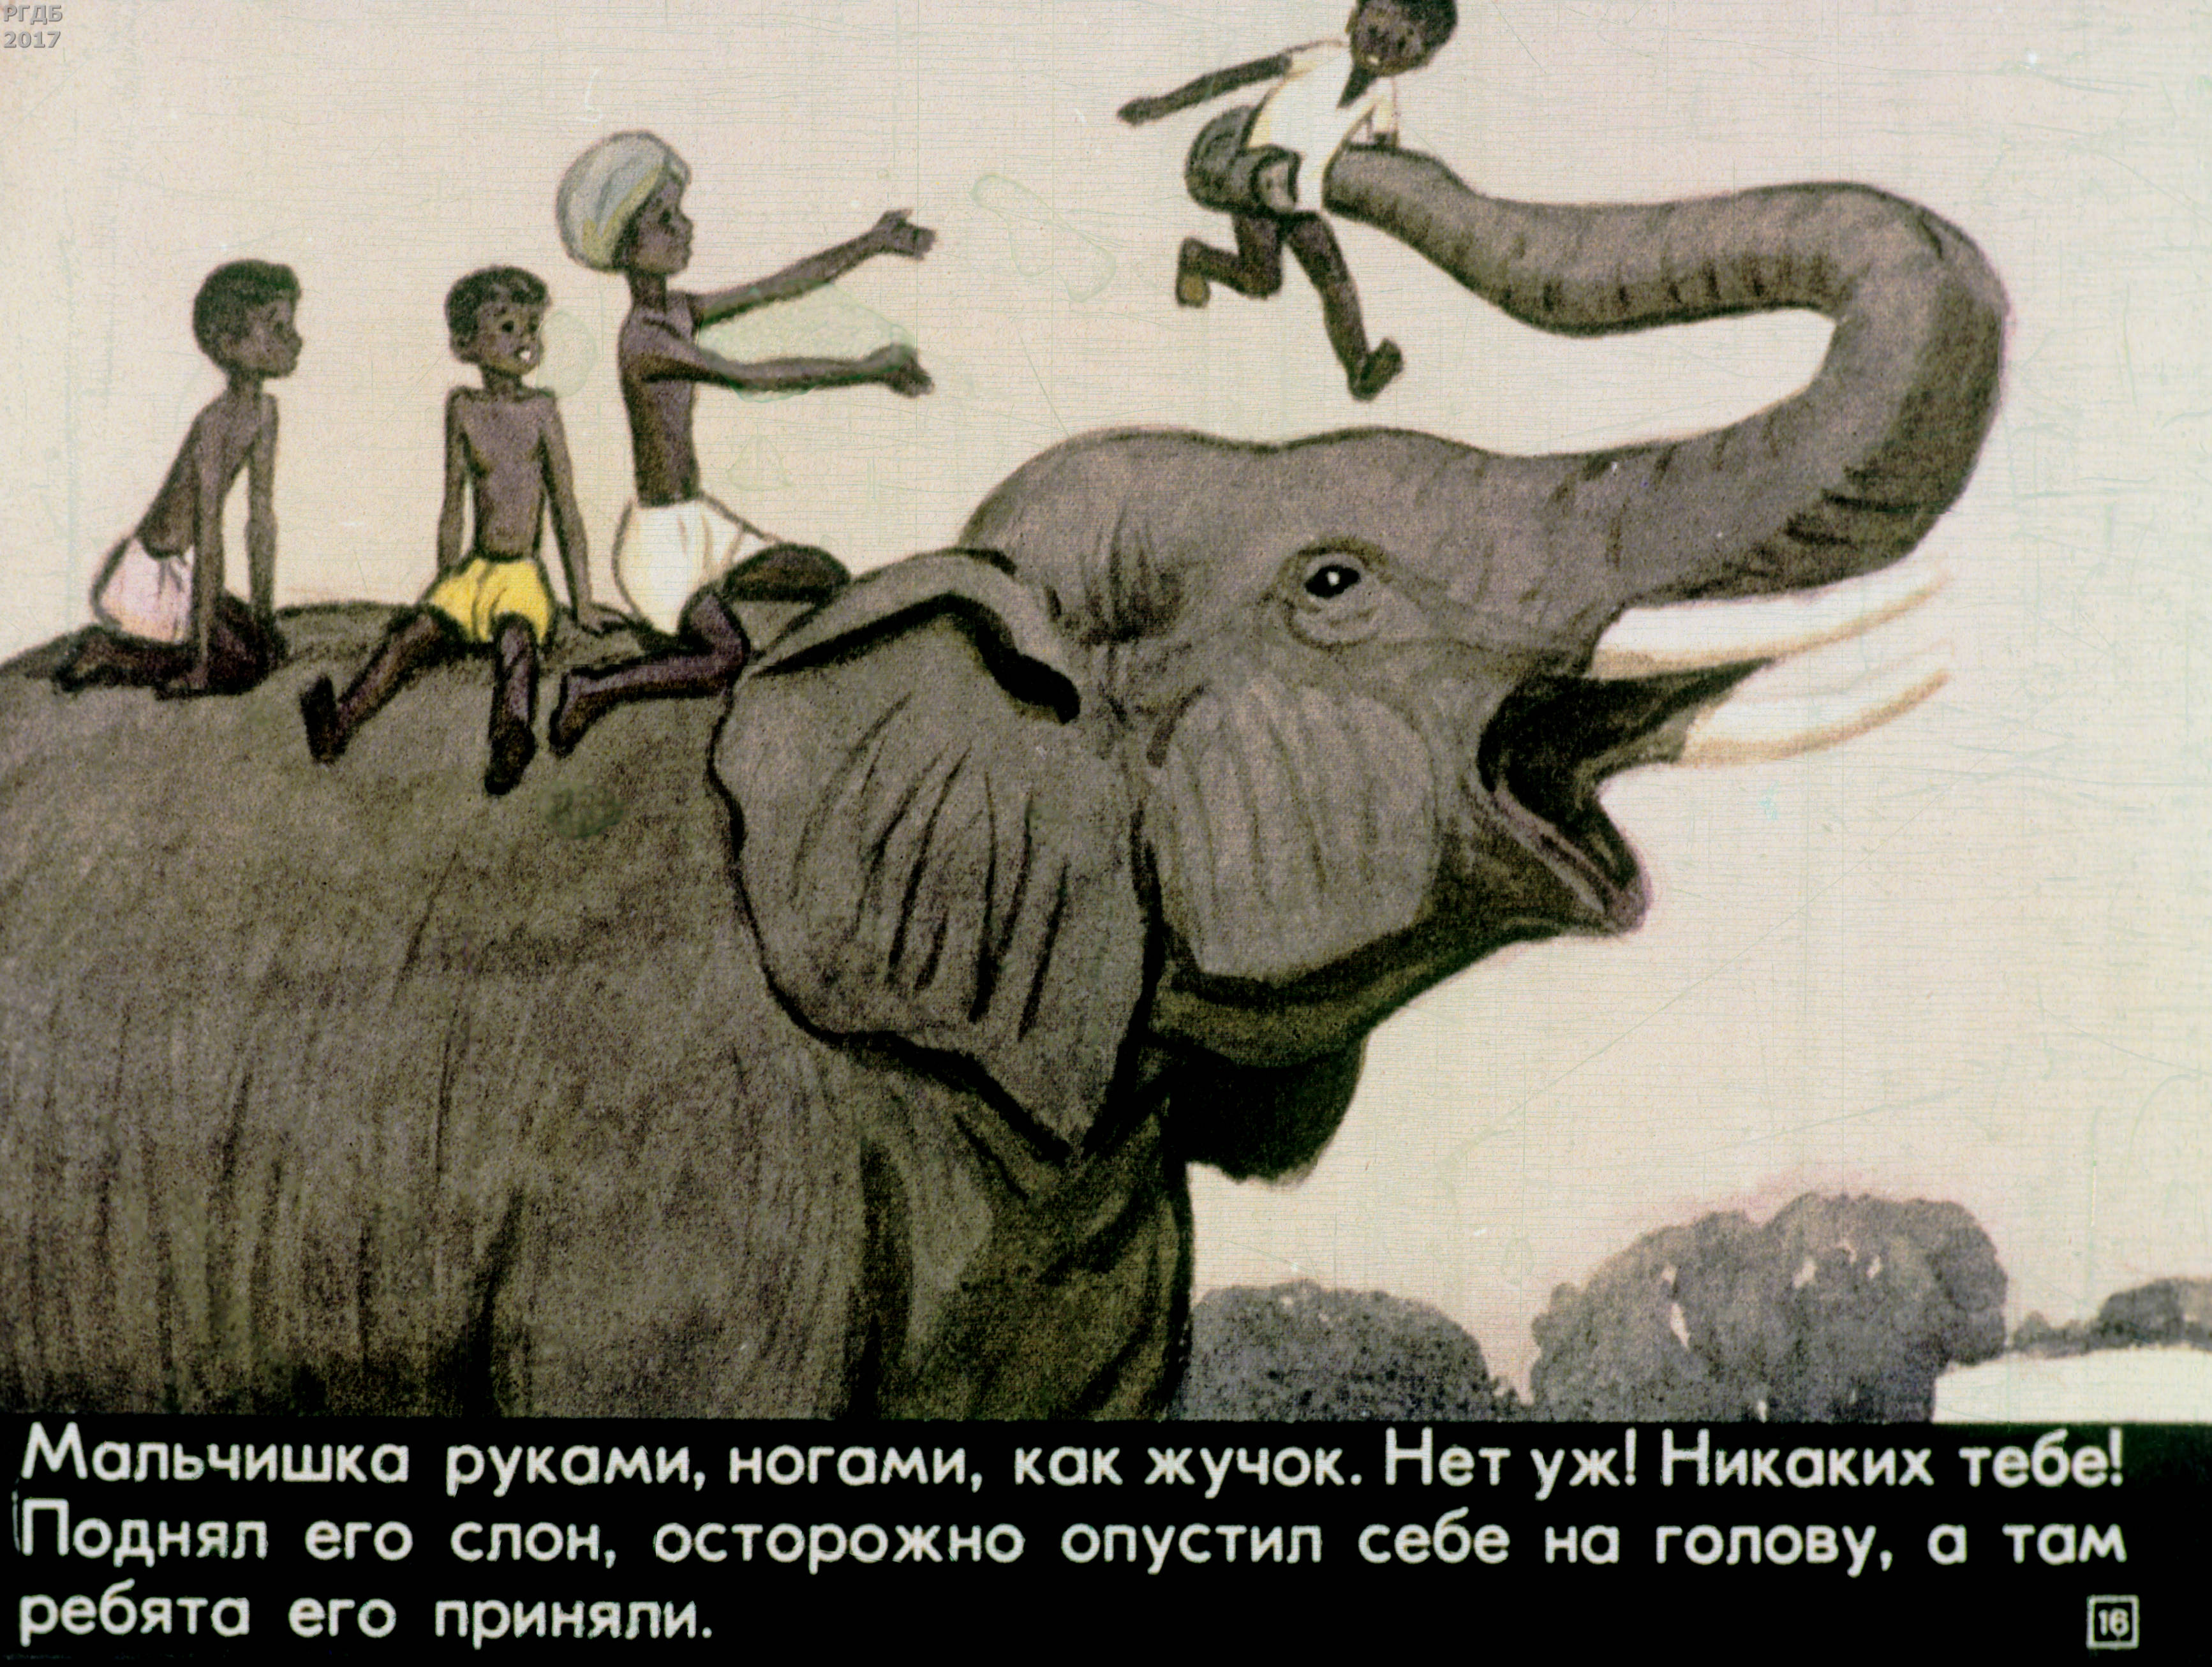 Читать про слона. Рассказ про слона Житков. Рассказ Житкова про слона. Диафильм Житков про слона.